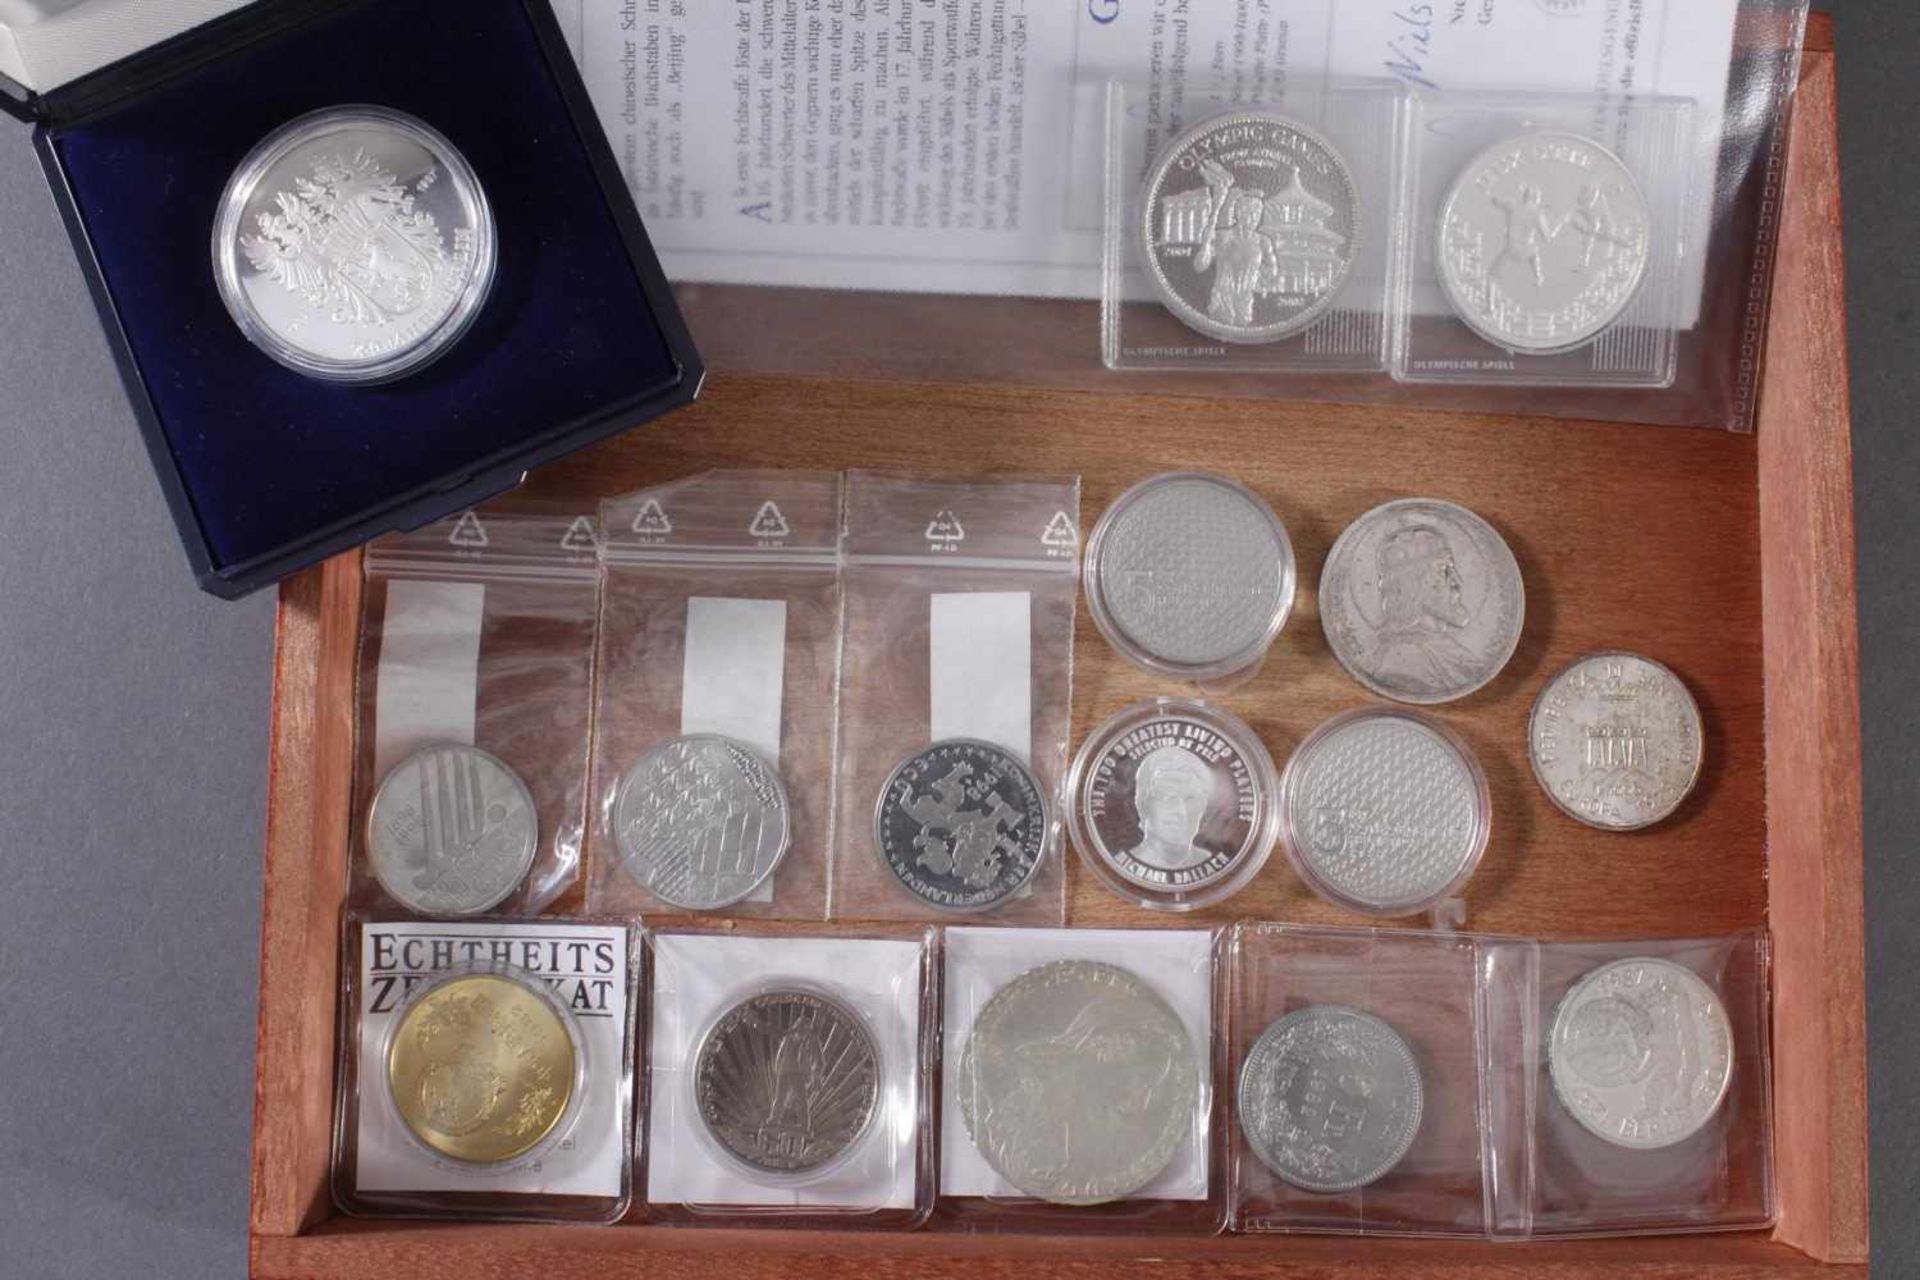 Sammlung Münzen und Medaillen1 1/2 Euro, 900er Silber, 22 g. 1 1/2 Euro Frankreich 2006, Silber - Bild 2 aus 5